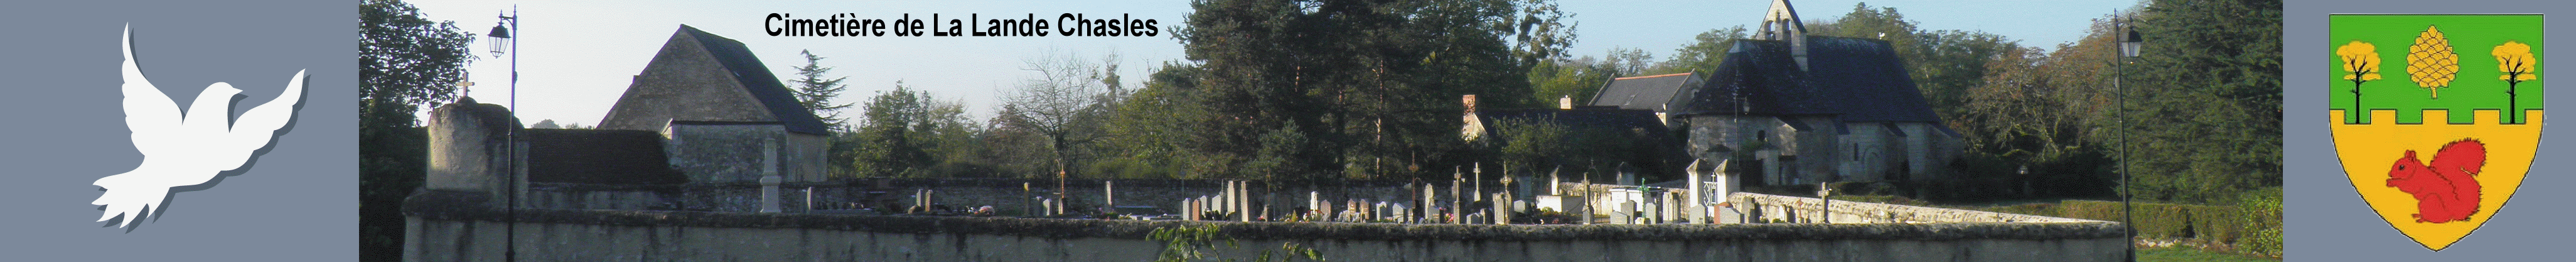 Cimetières et concessions de La-Lande-Chasles - Visualisation d'une sépulture